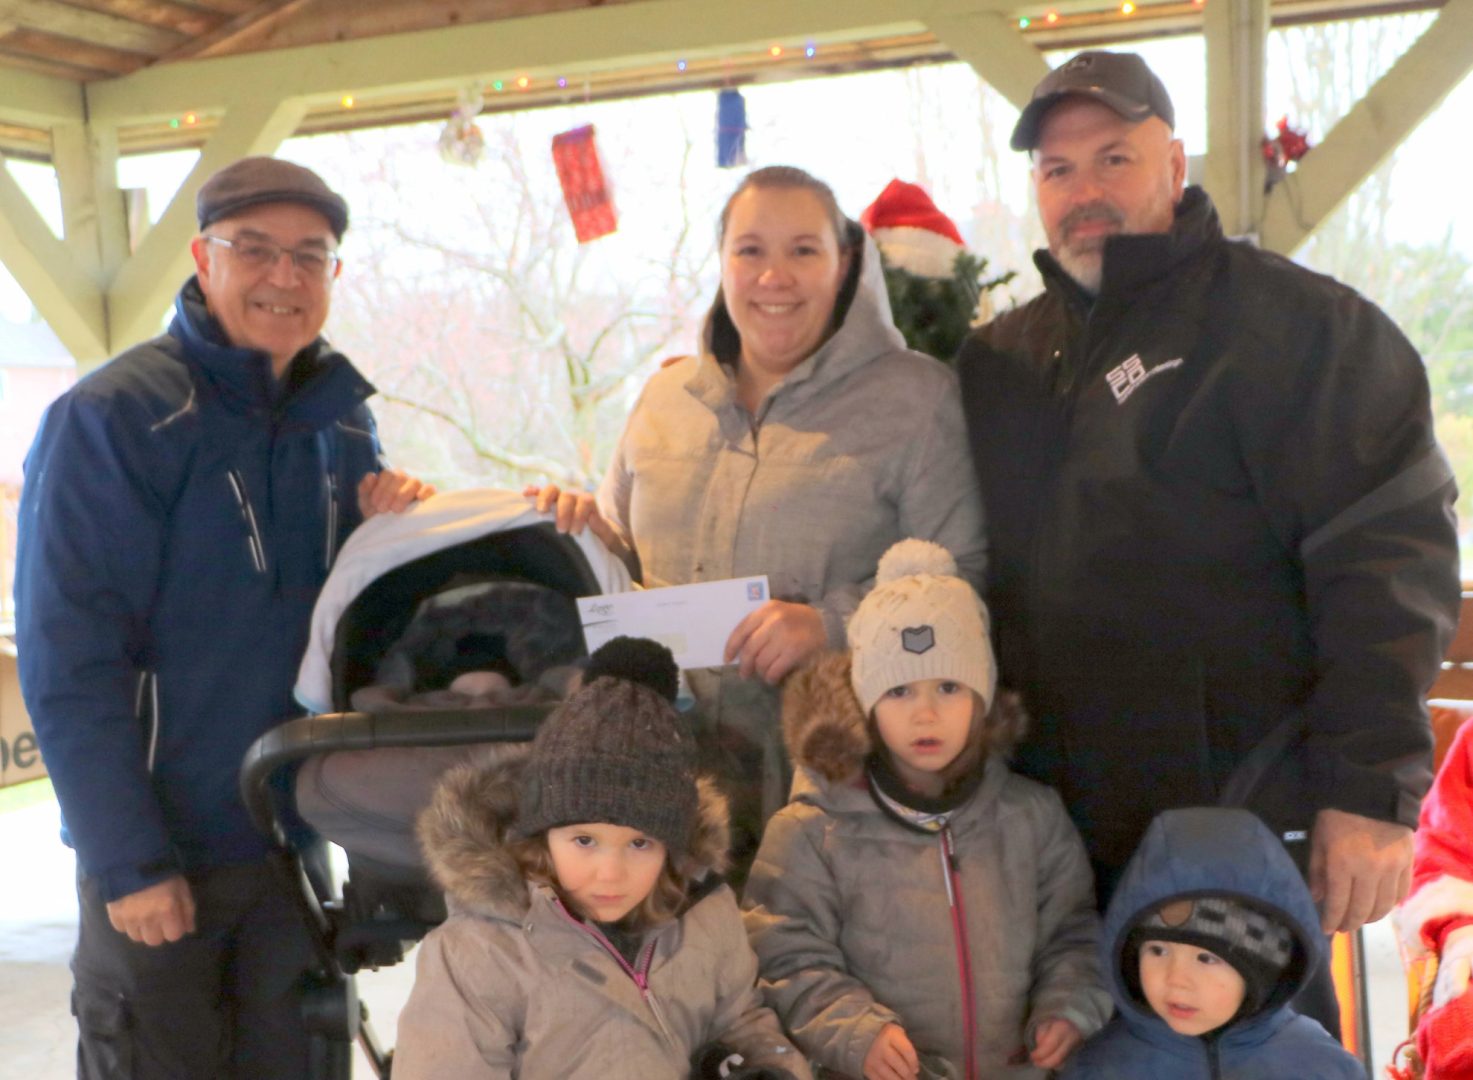 La famille Dupont-Goulet avec le maire Jean-Pierre Charuest lors du Marché de Noël le 3 décembre au Parc des Lions.